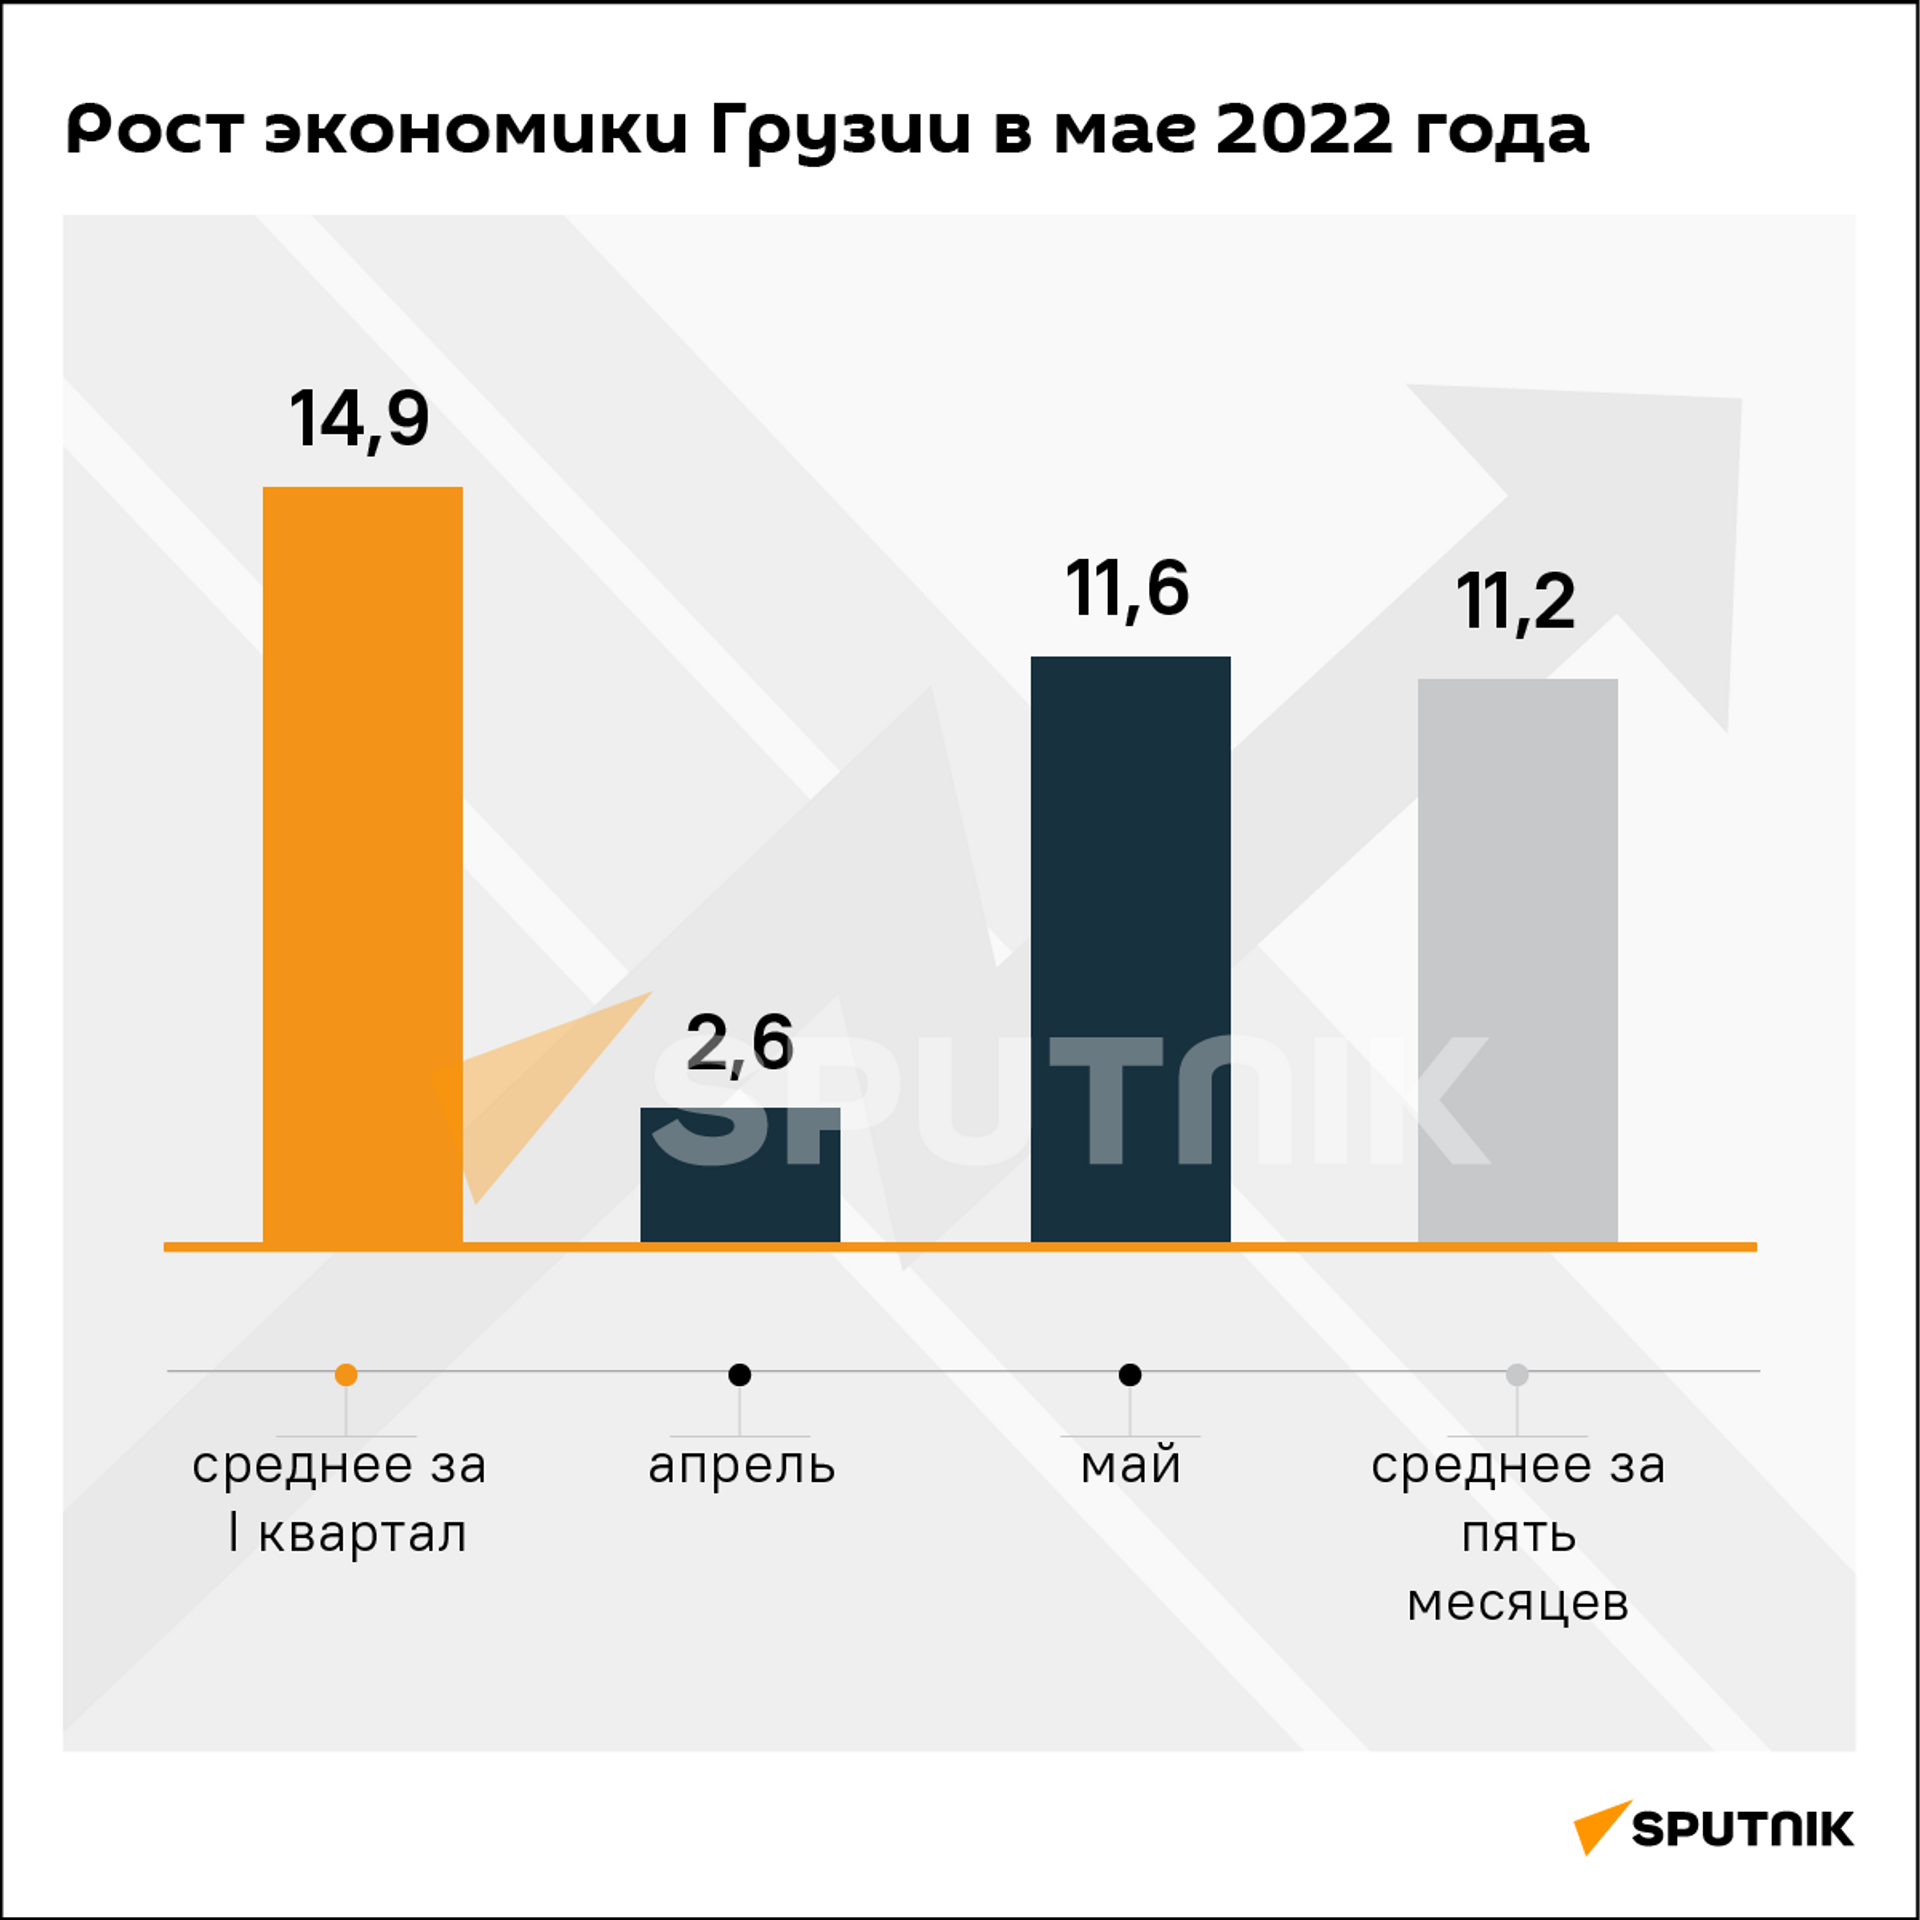 Экономический рост Грузии за май и пять месяцев 2022 года - Sputnik Грузия, 1920, 04.07.2022